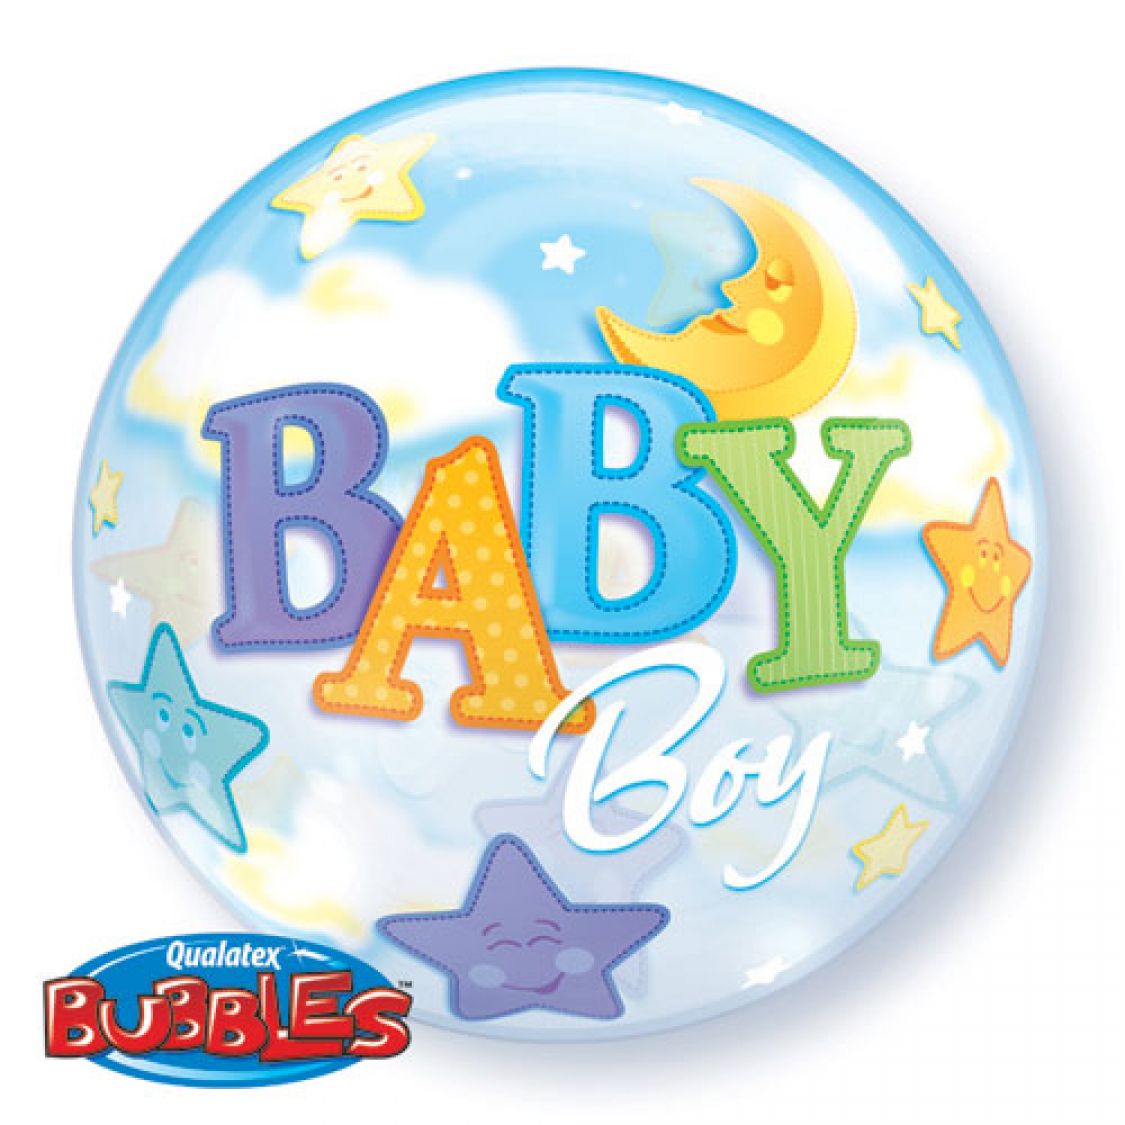 Ballon Bubble Baby Boy